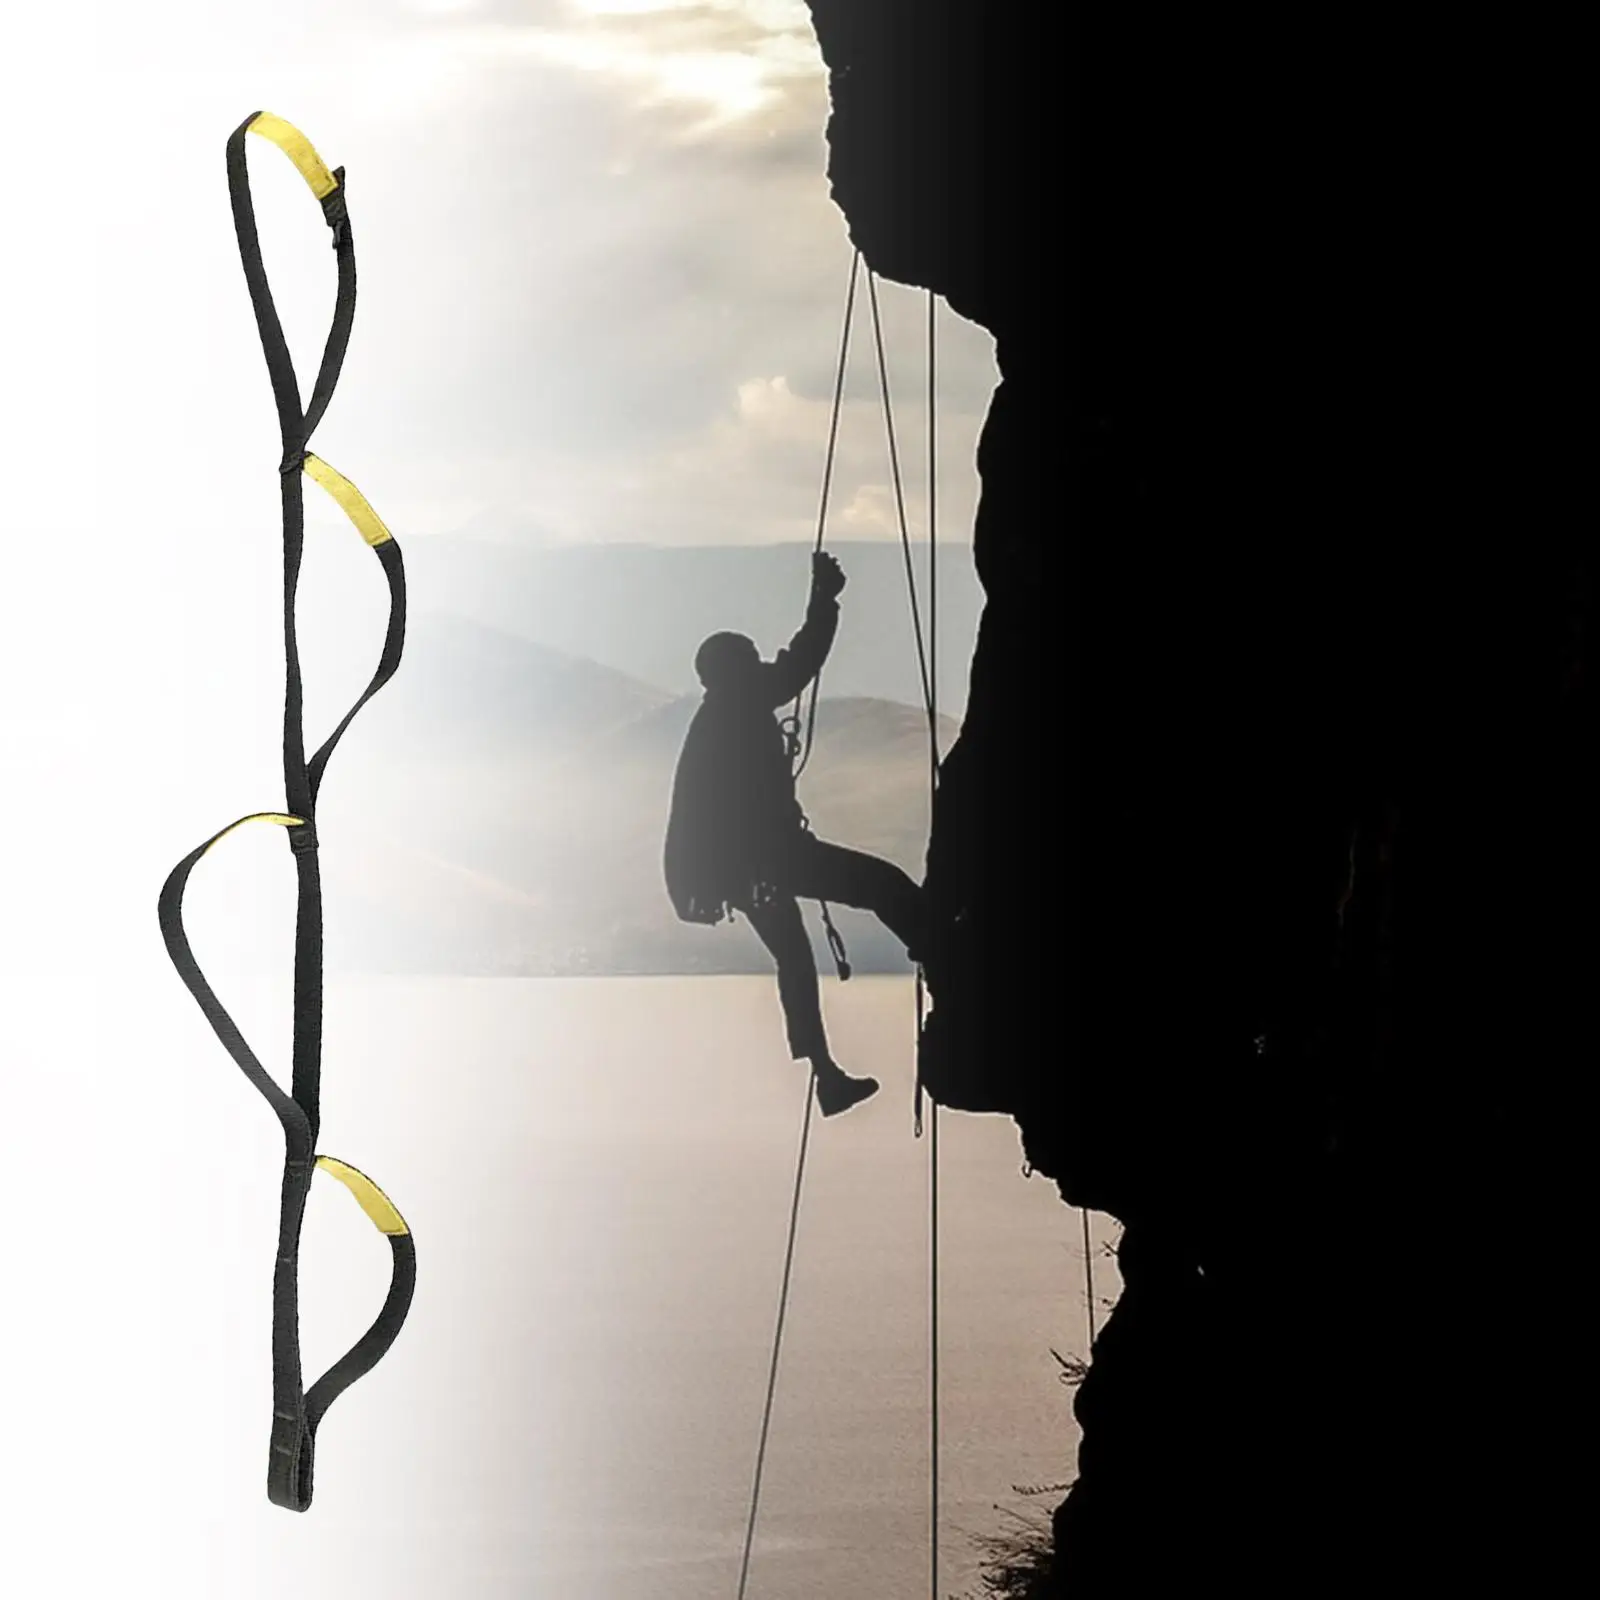 Webbing Strap Ladder Hiking Caving Swim Mountaineering Climbing Rope